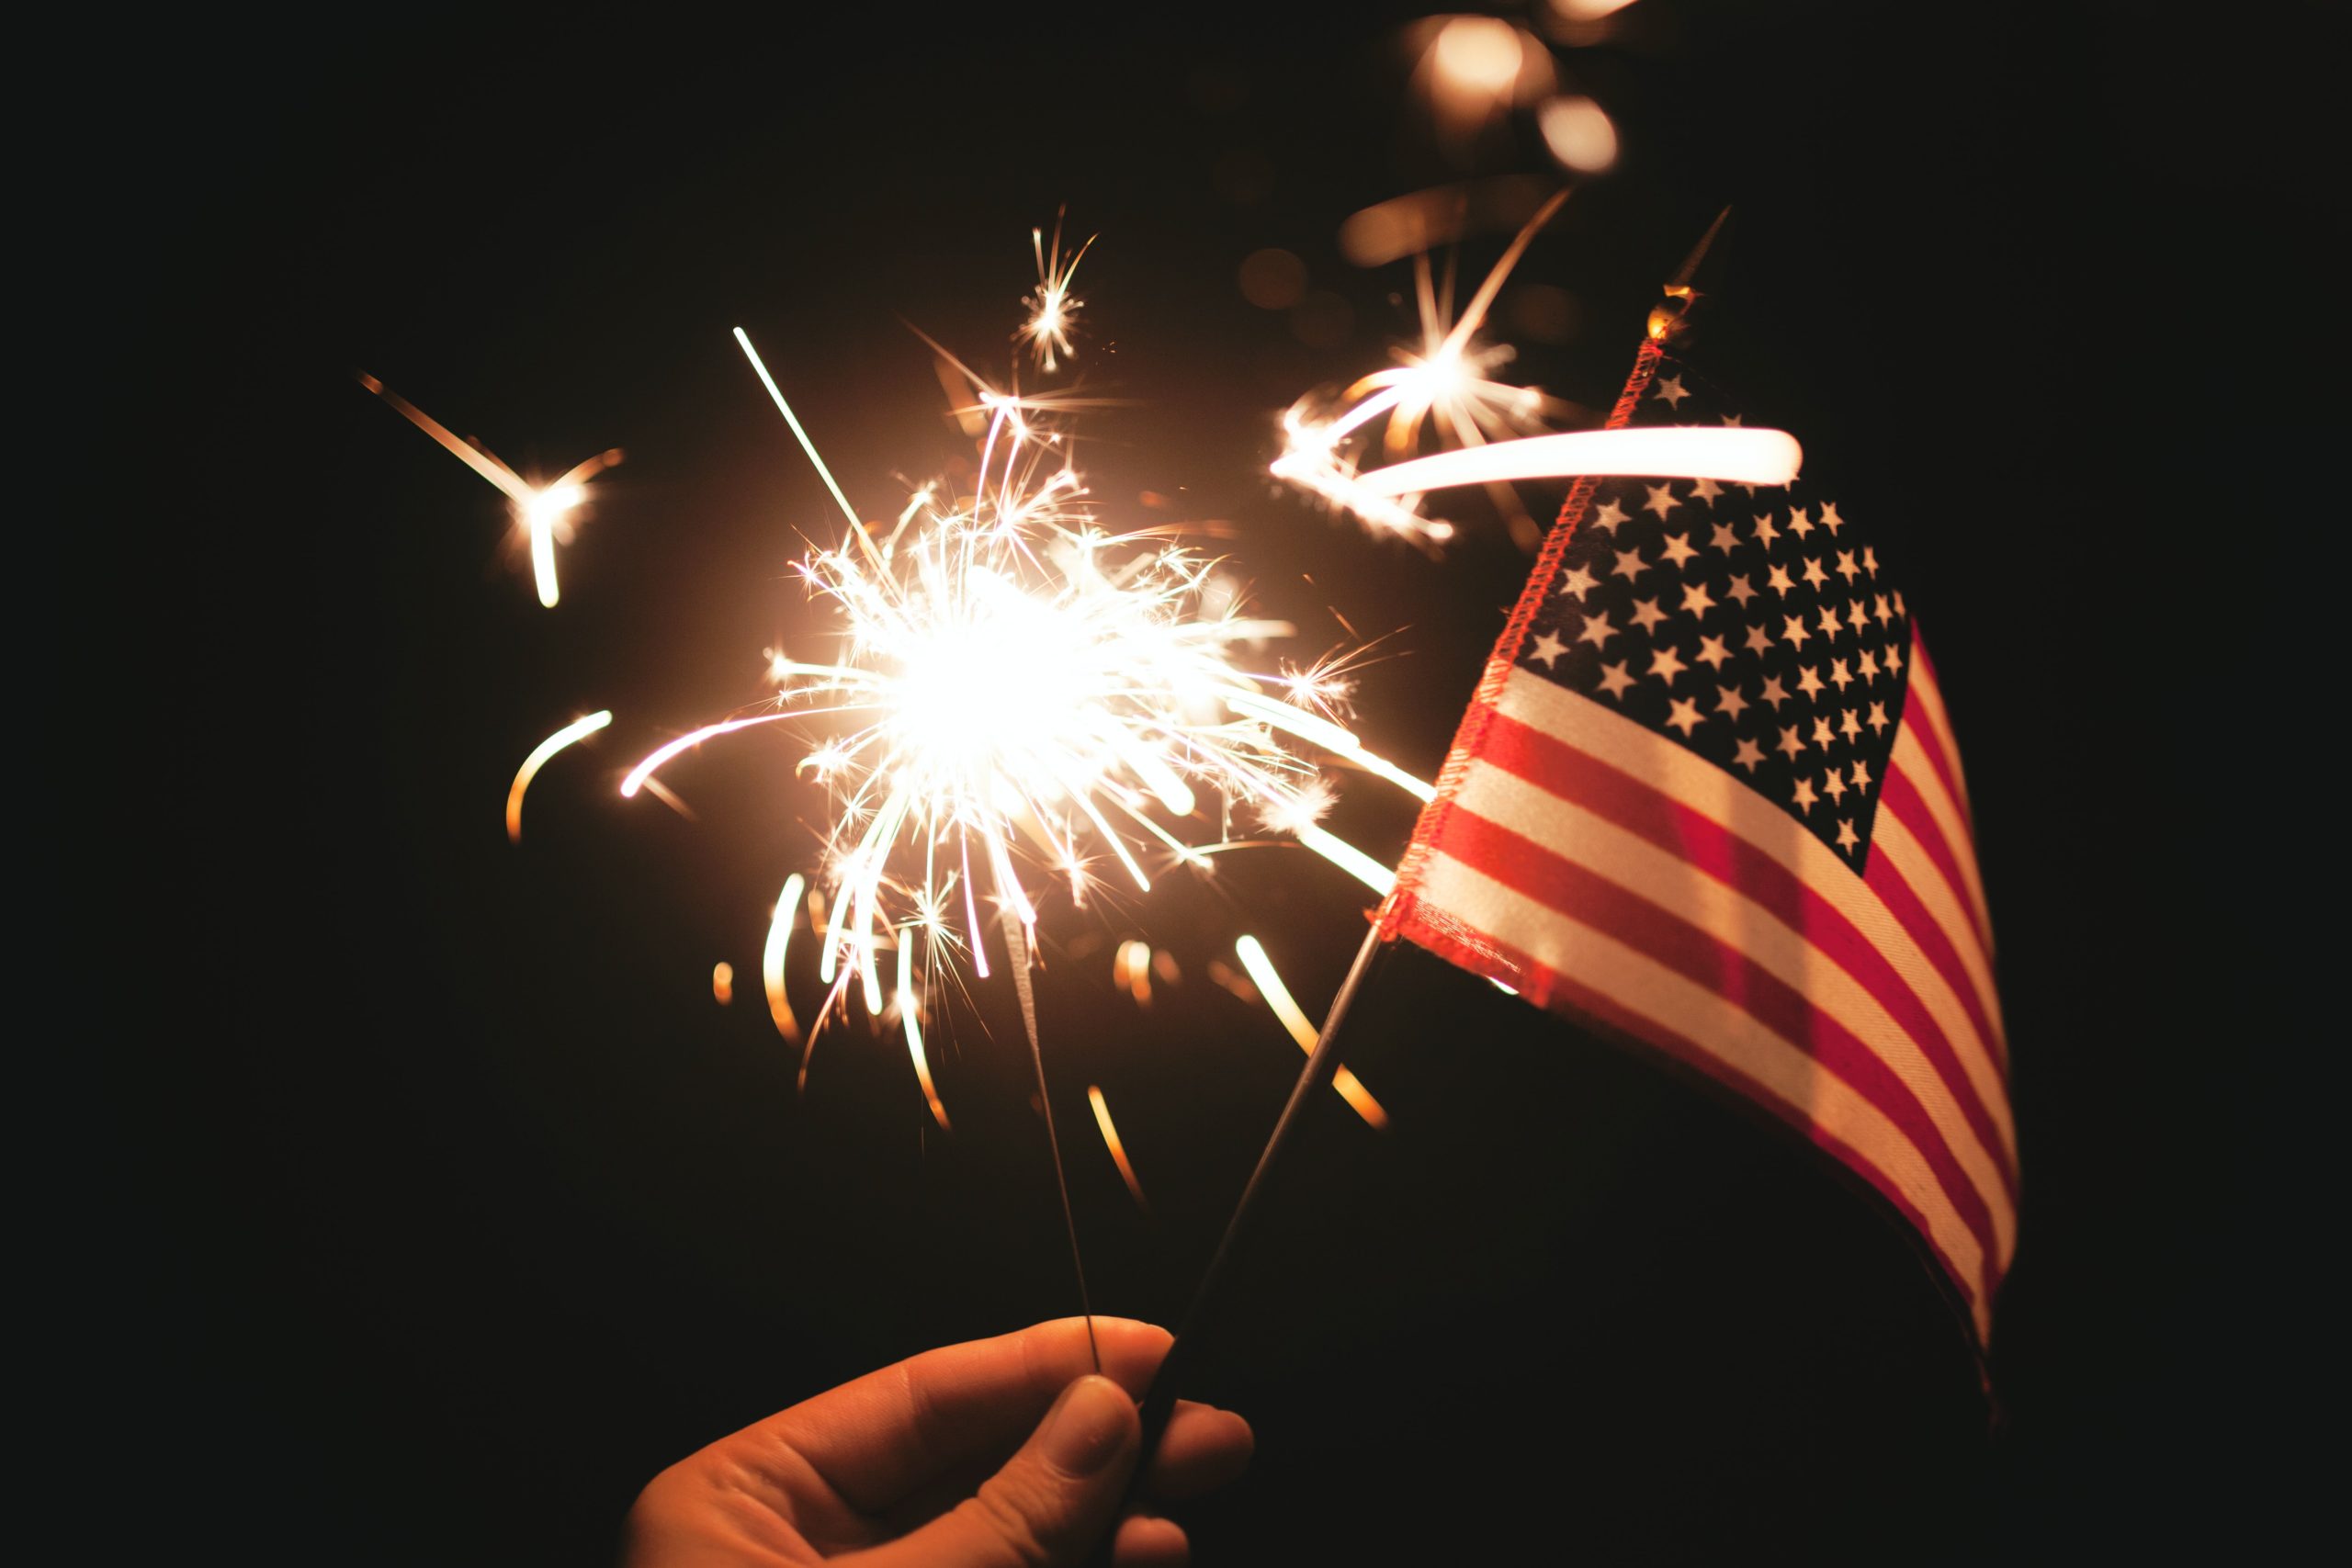 Fireworks, mini American flag